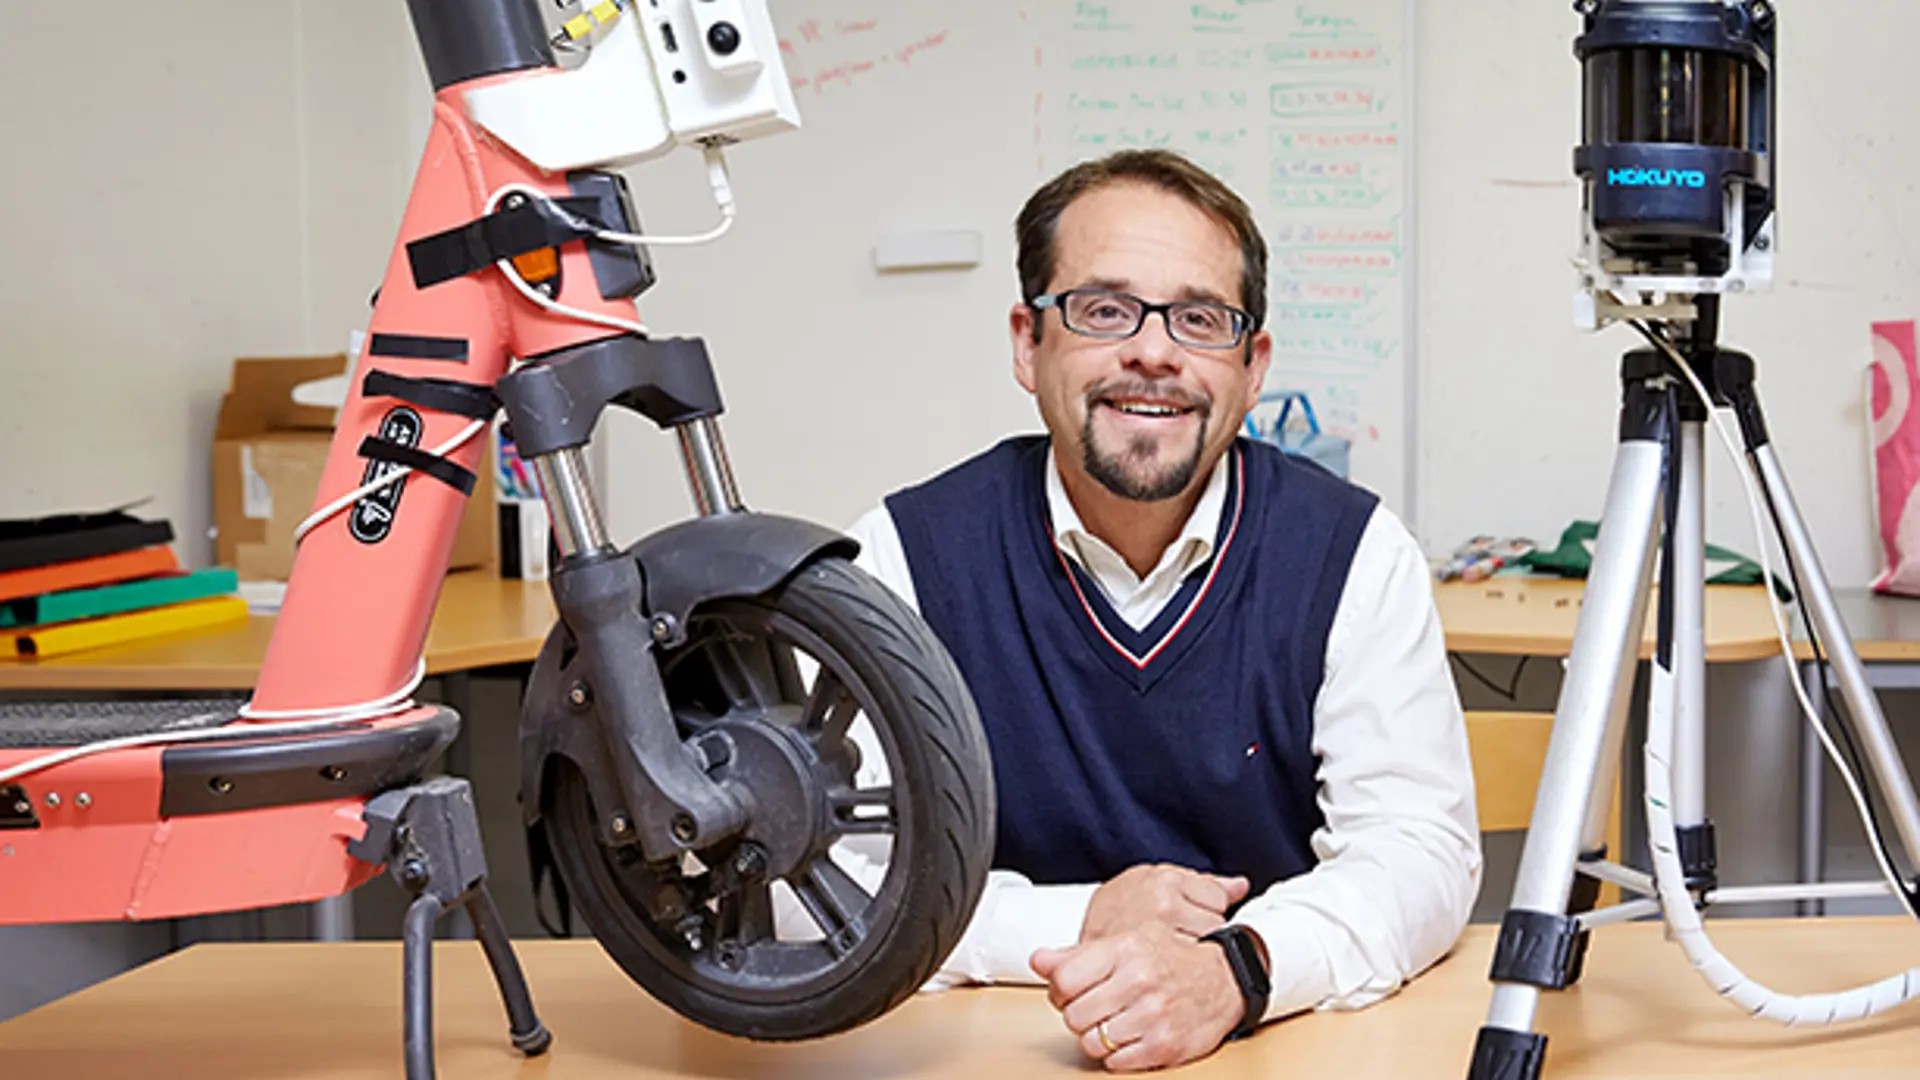 Marco Dozza, professor i trafiksäkerhet, sitter vid ett bord med en elsparkcykel och andra forskningsinstrument